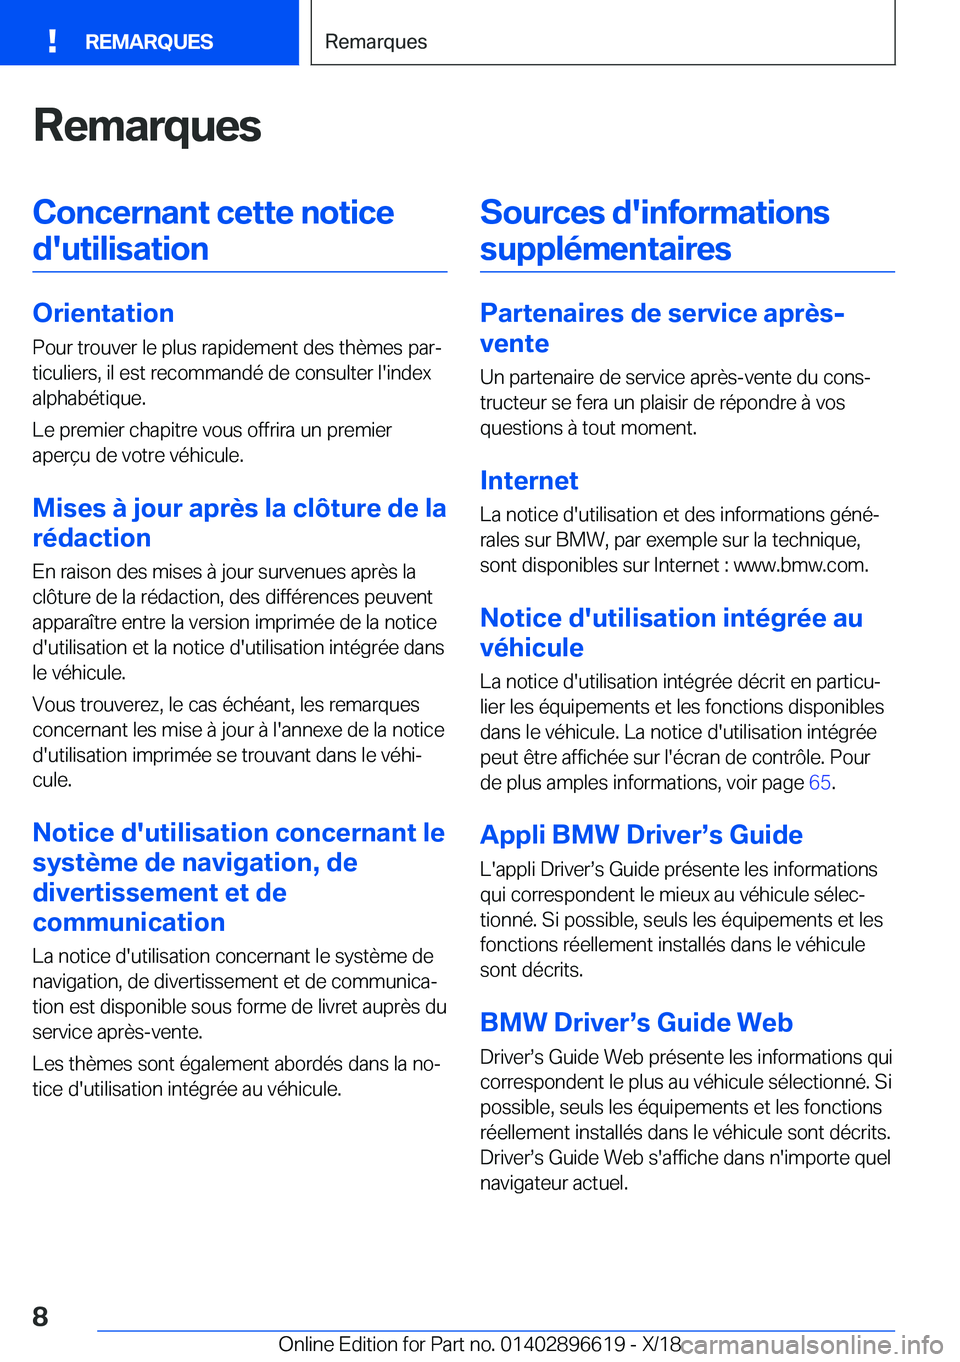 BMW M2 2019  Notices Demploi (in French) �R�e�m�a�r�q�u�e�s�C�o�n�c�e�r�n�a�n�t��c�e�t�t�e��n�o�t�i�c�e�d�'�u�t�i�l�i�s�a�t�i�o�n
�O�r�i�e�n�t�a�t�i�o�n �P�o�u�r��t�r�o�u�v�e�r��l�e��p�l�u�s��r�a�p�i�d�e�m�e�n�t��d�e�s��t�h�è�m�